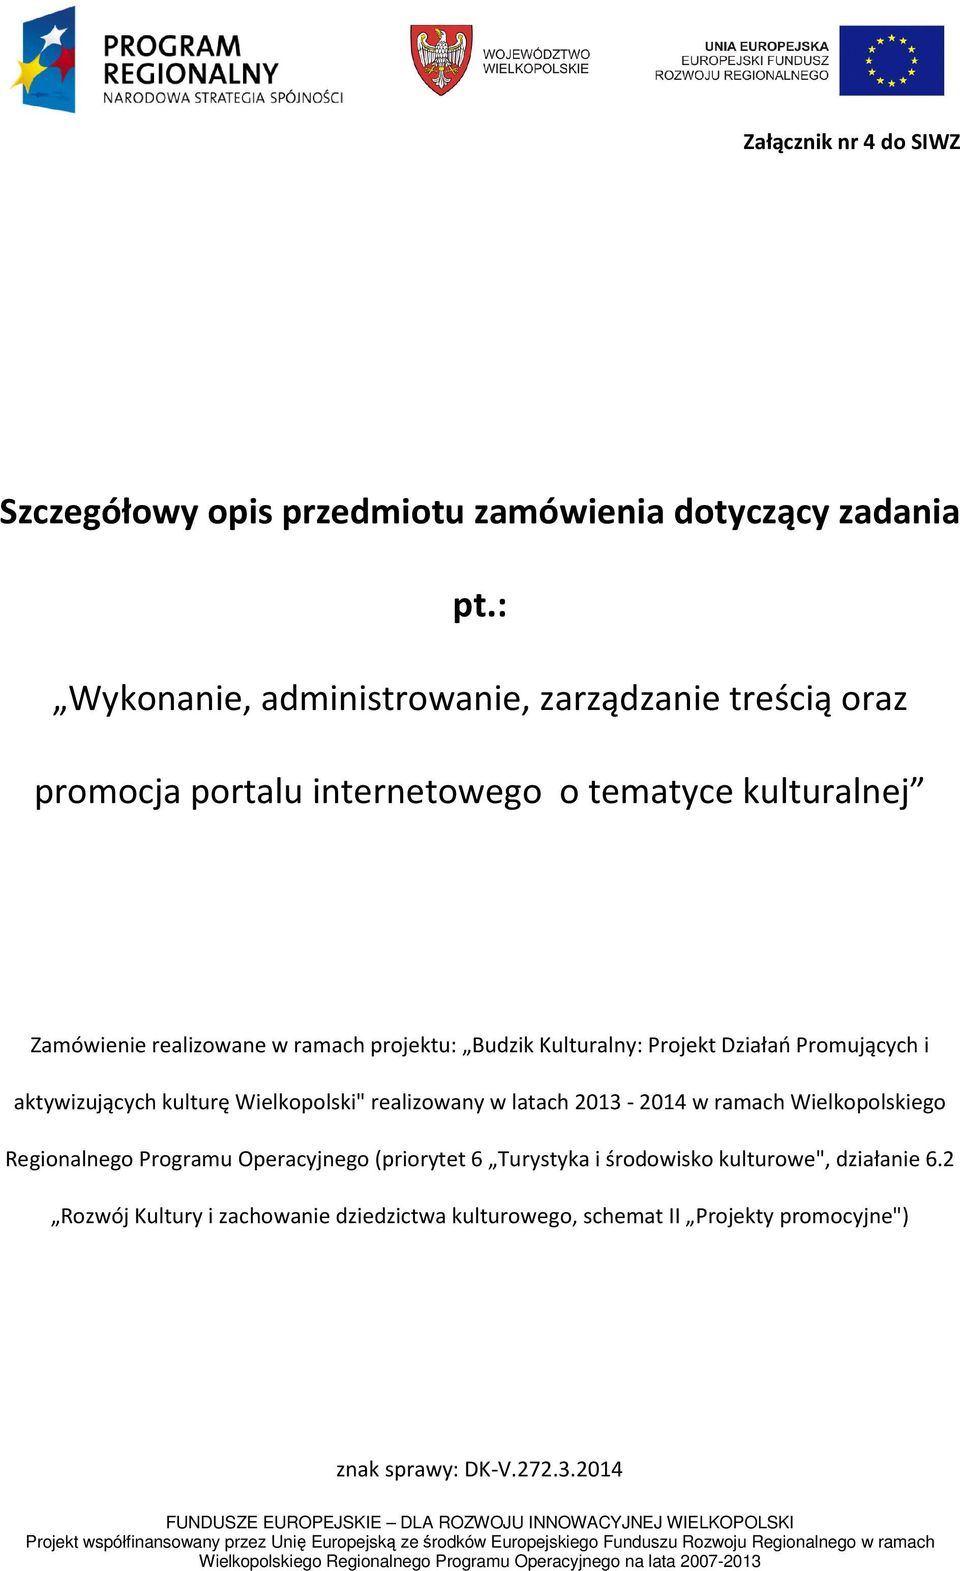 projektu: Budzik Kulturalny: Projekt Działań Promujących i aktywizujących kulturę Wielkopolski" realizowany w latach 2013-2014 w ramach